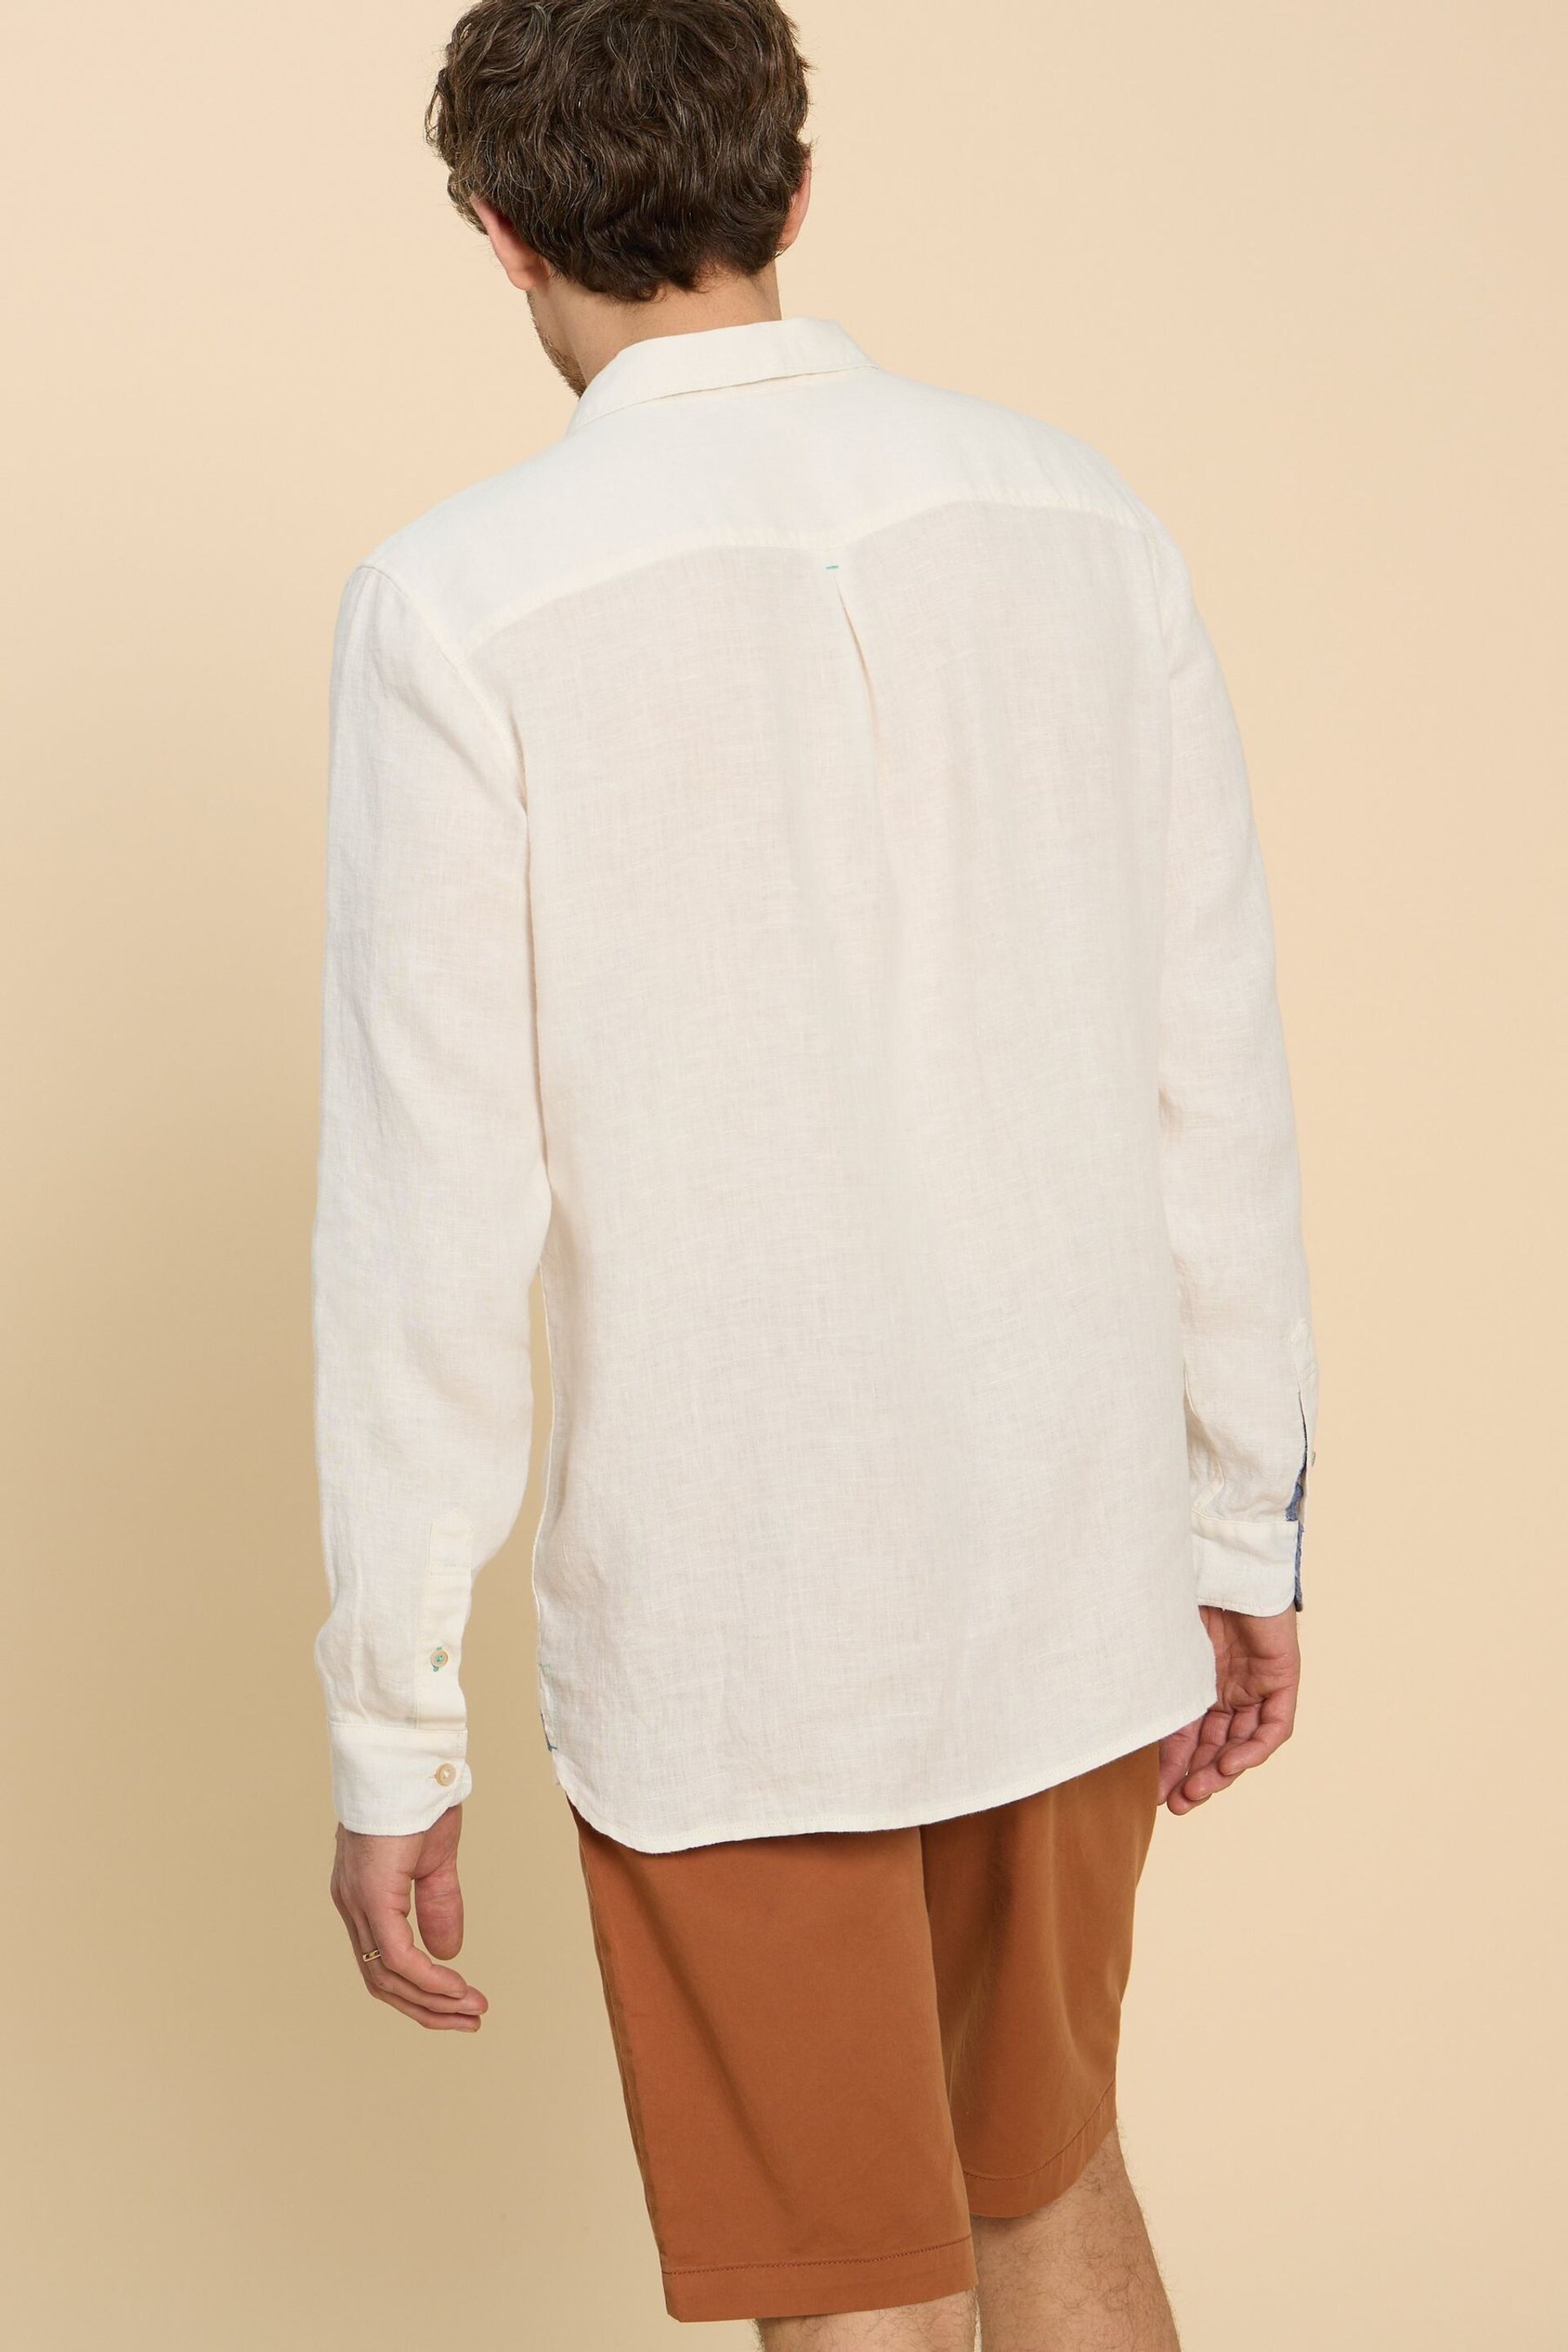 White Stuff White Pembroke Linen Shirt - Image 2 of 7